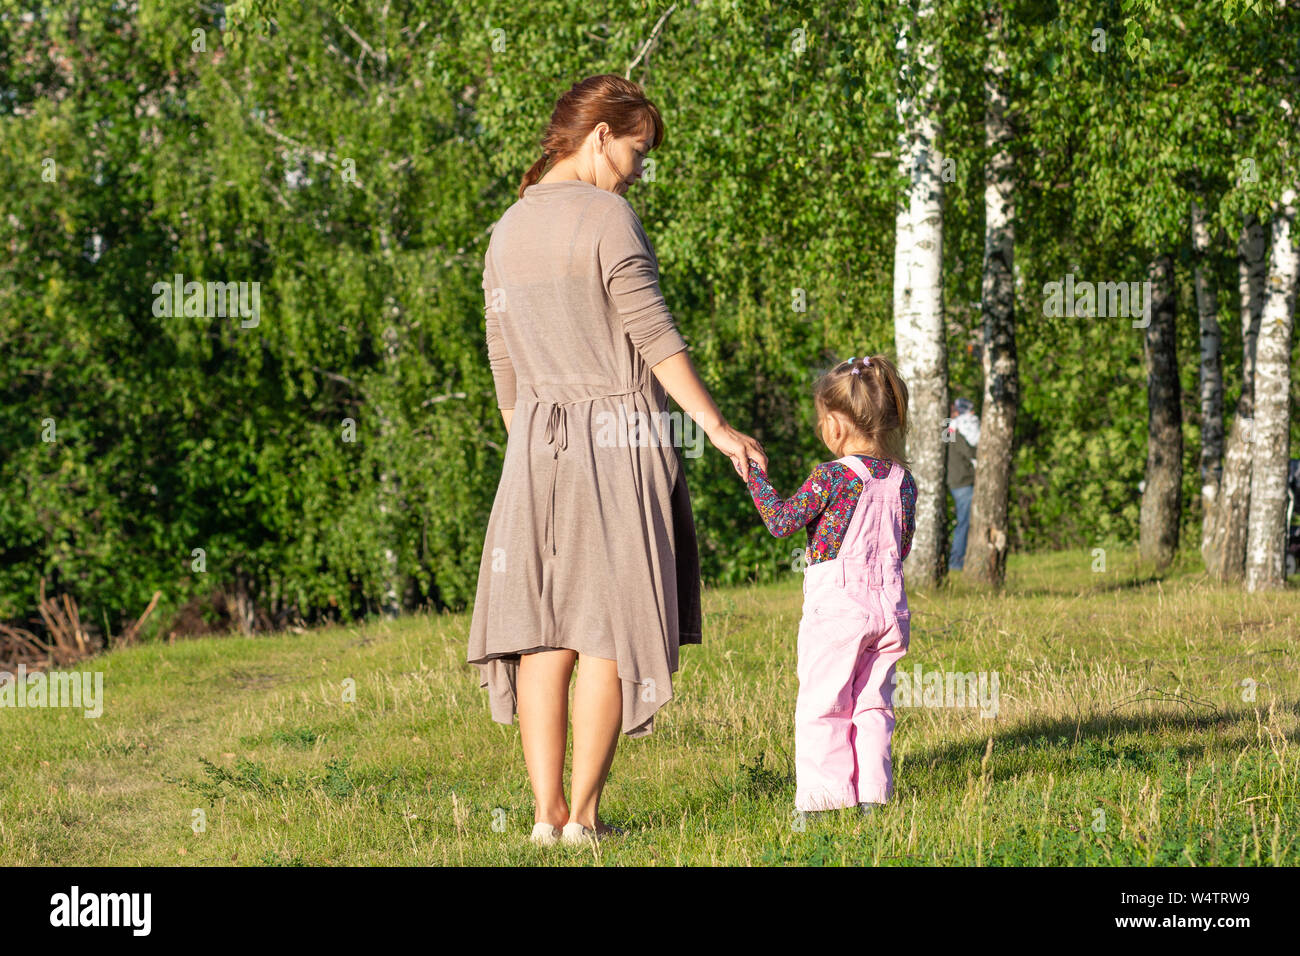 Espaldas de mujer de mediana edad y niños tomados de las manos en el parque con árboles de verano Foto de stock